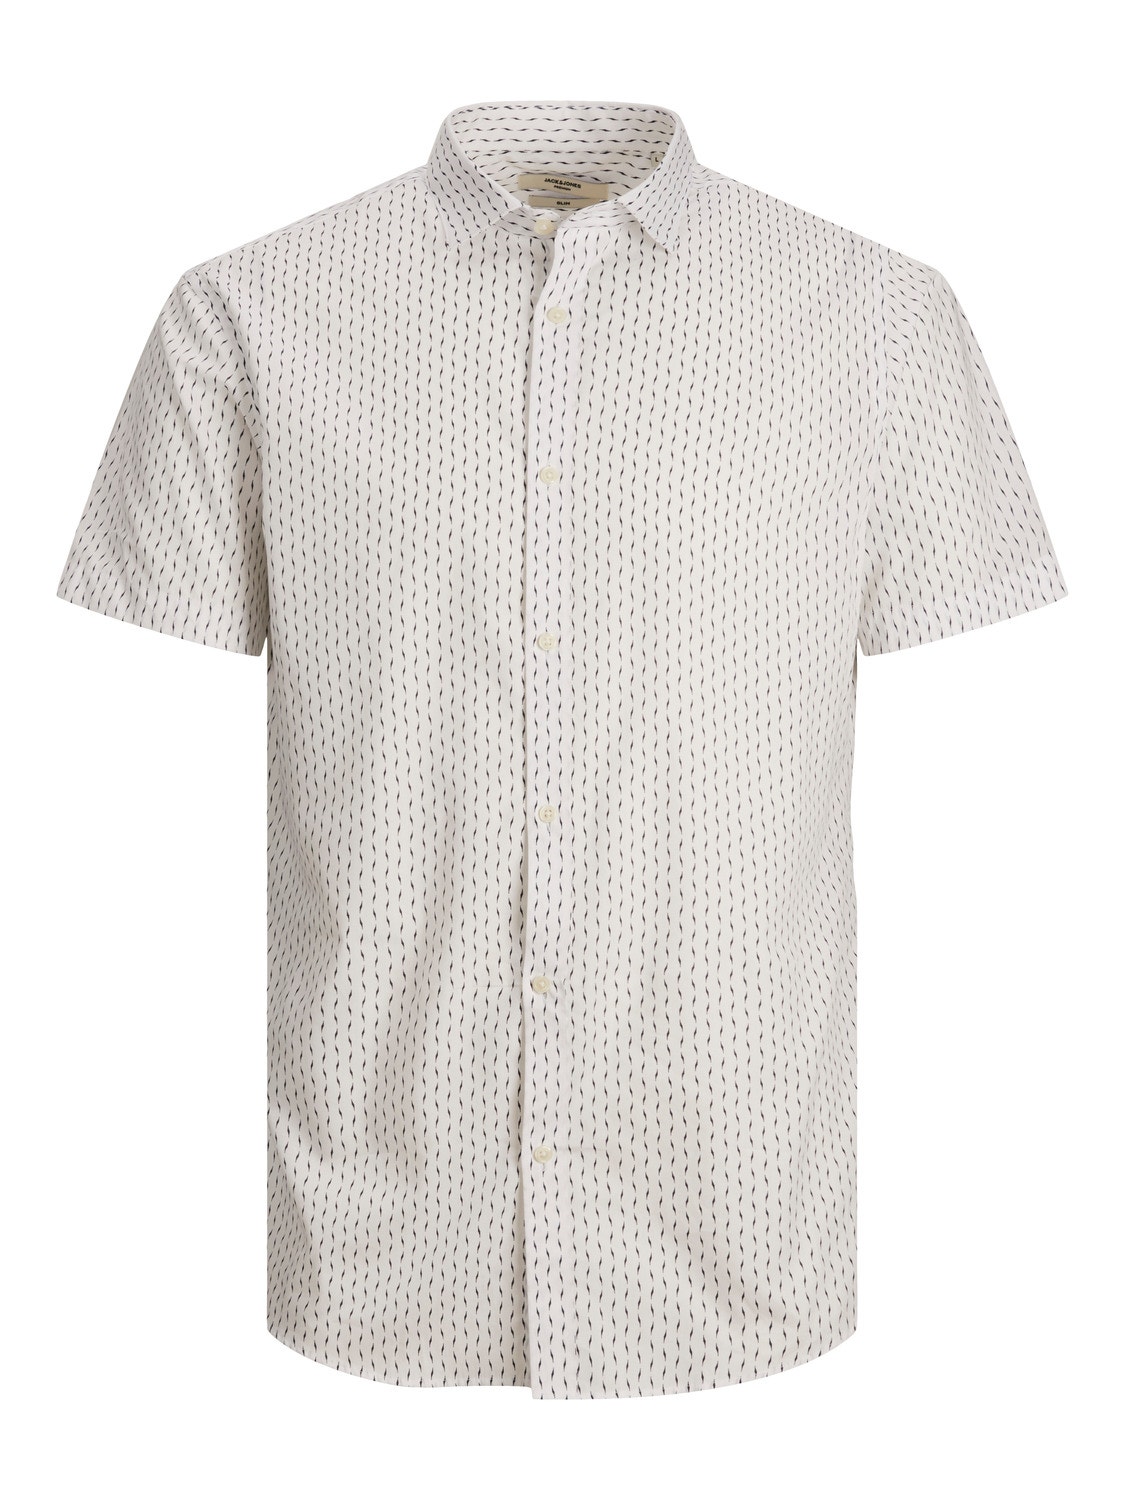 Jack & Jones Camisa Casual Regular Fit -White - 12231865